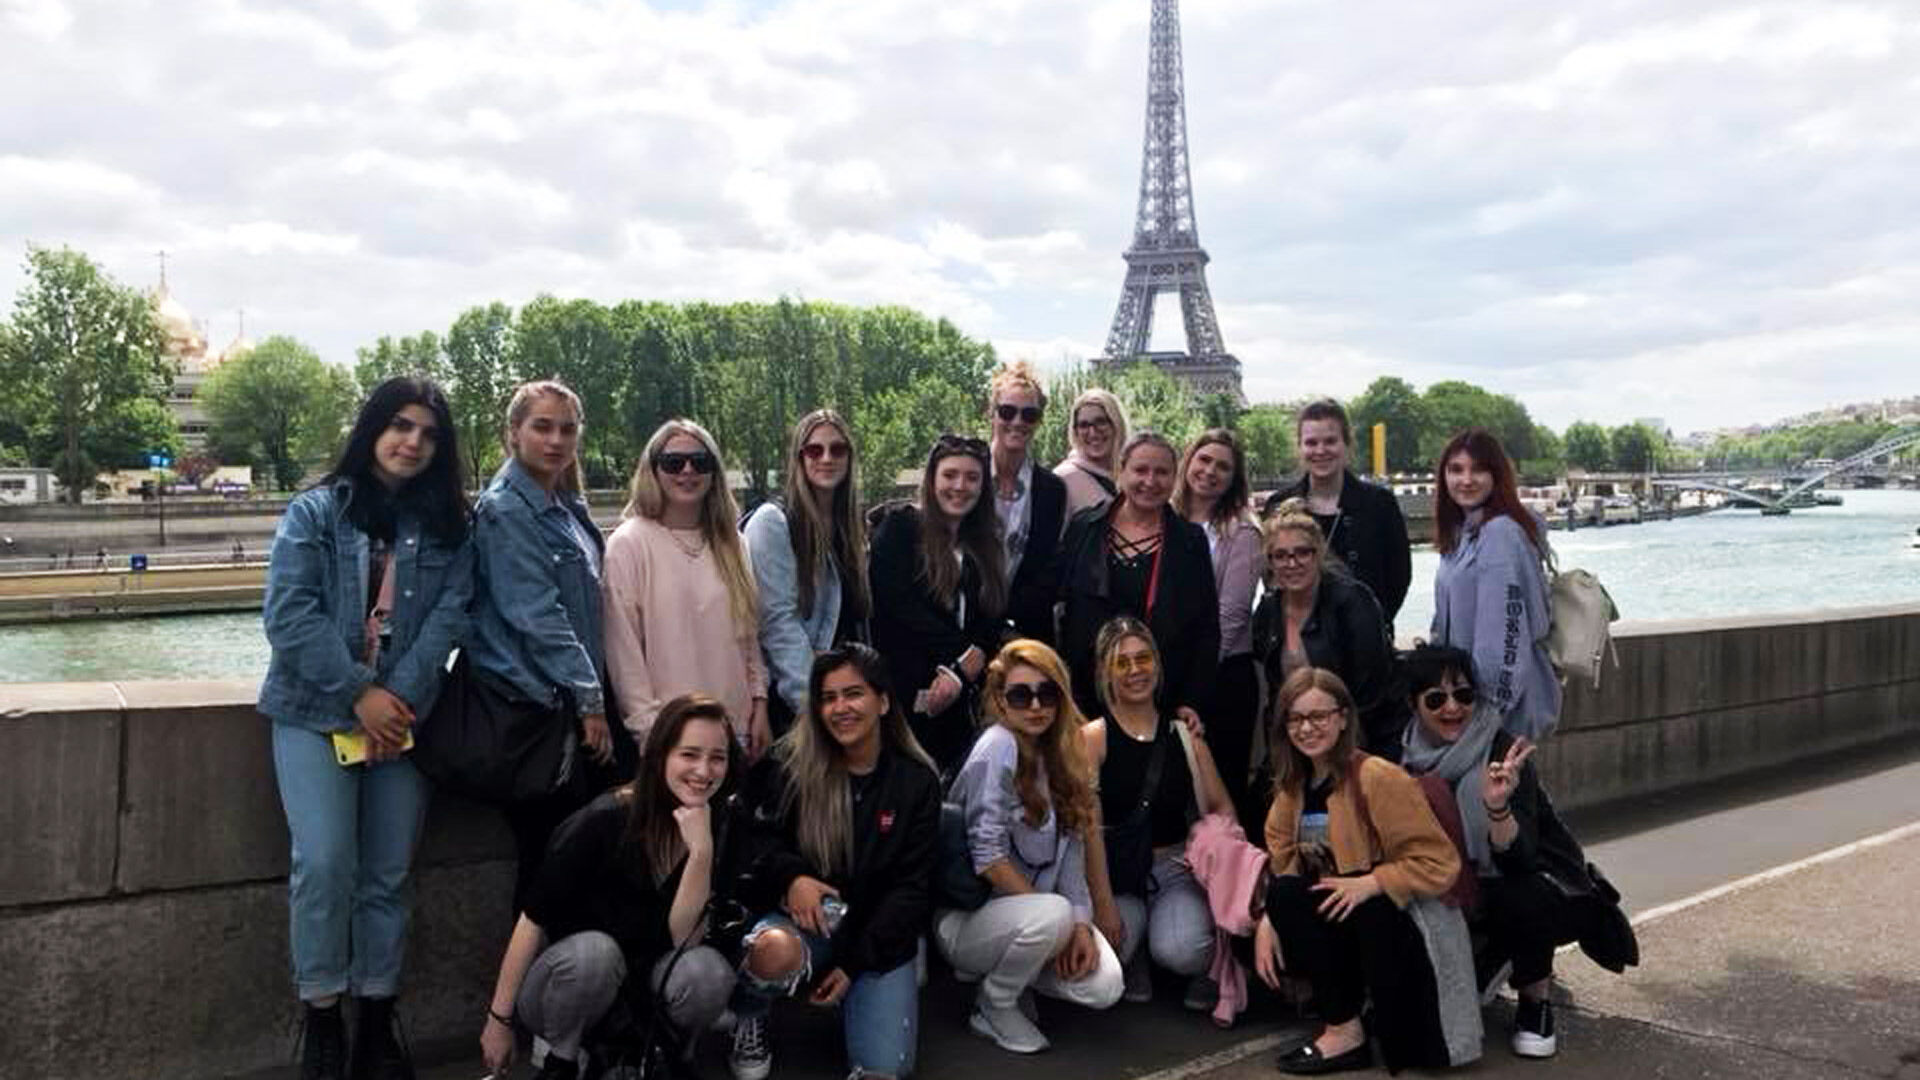  Un groupe de touristes avec la Tour Eiffel en arrière-plan, profitant d'une journée ensoleillée au bord de la Seine à Paris.